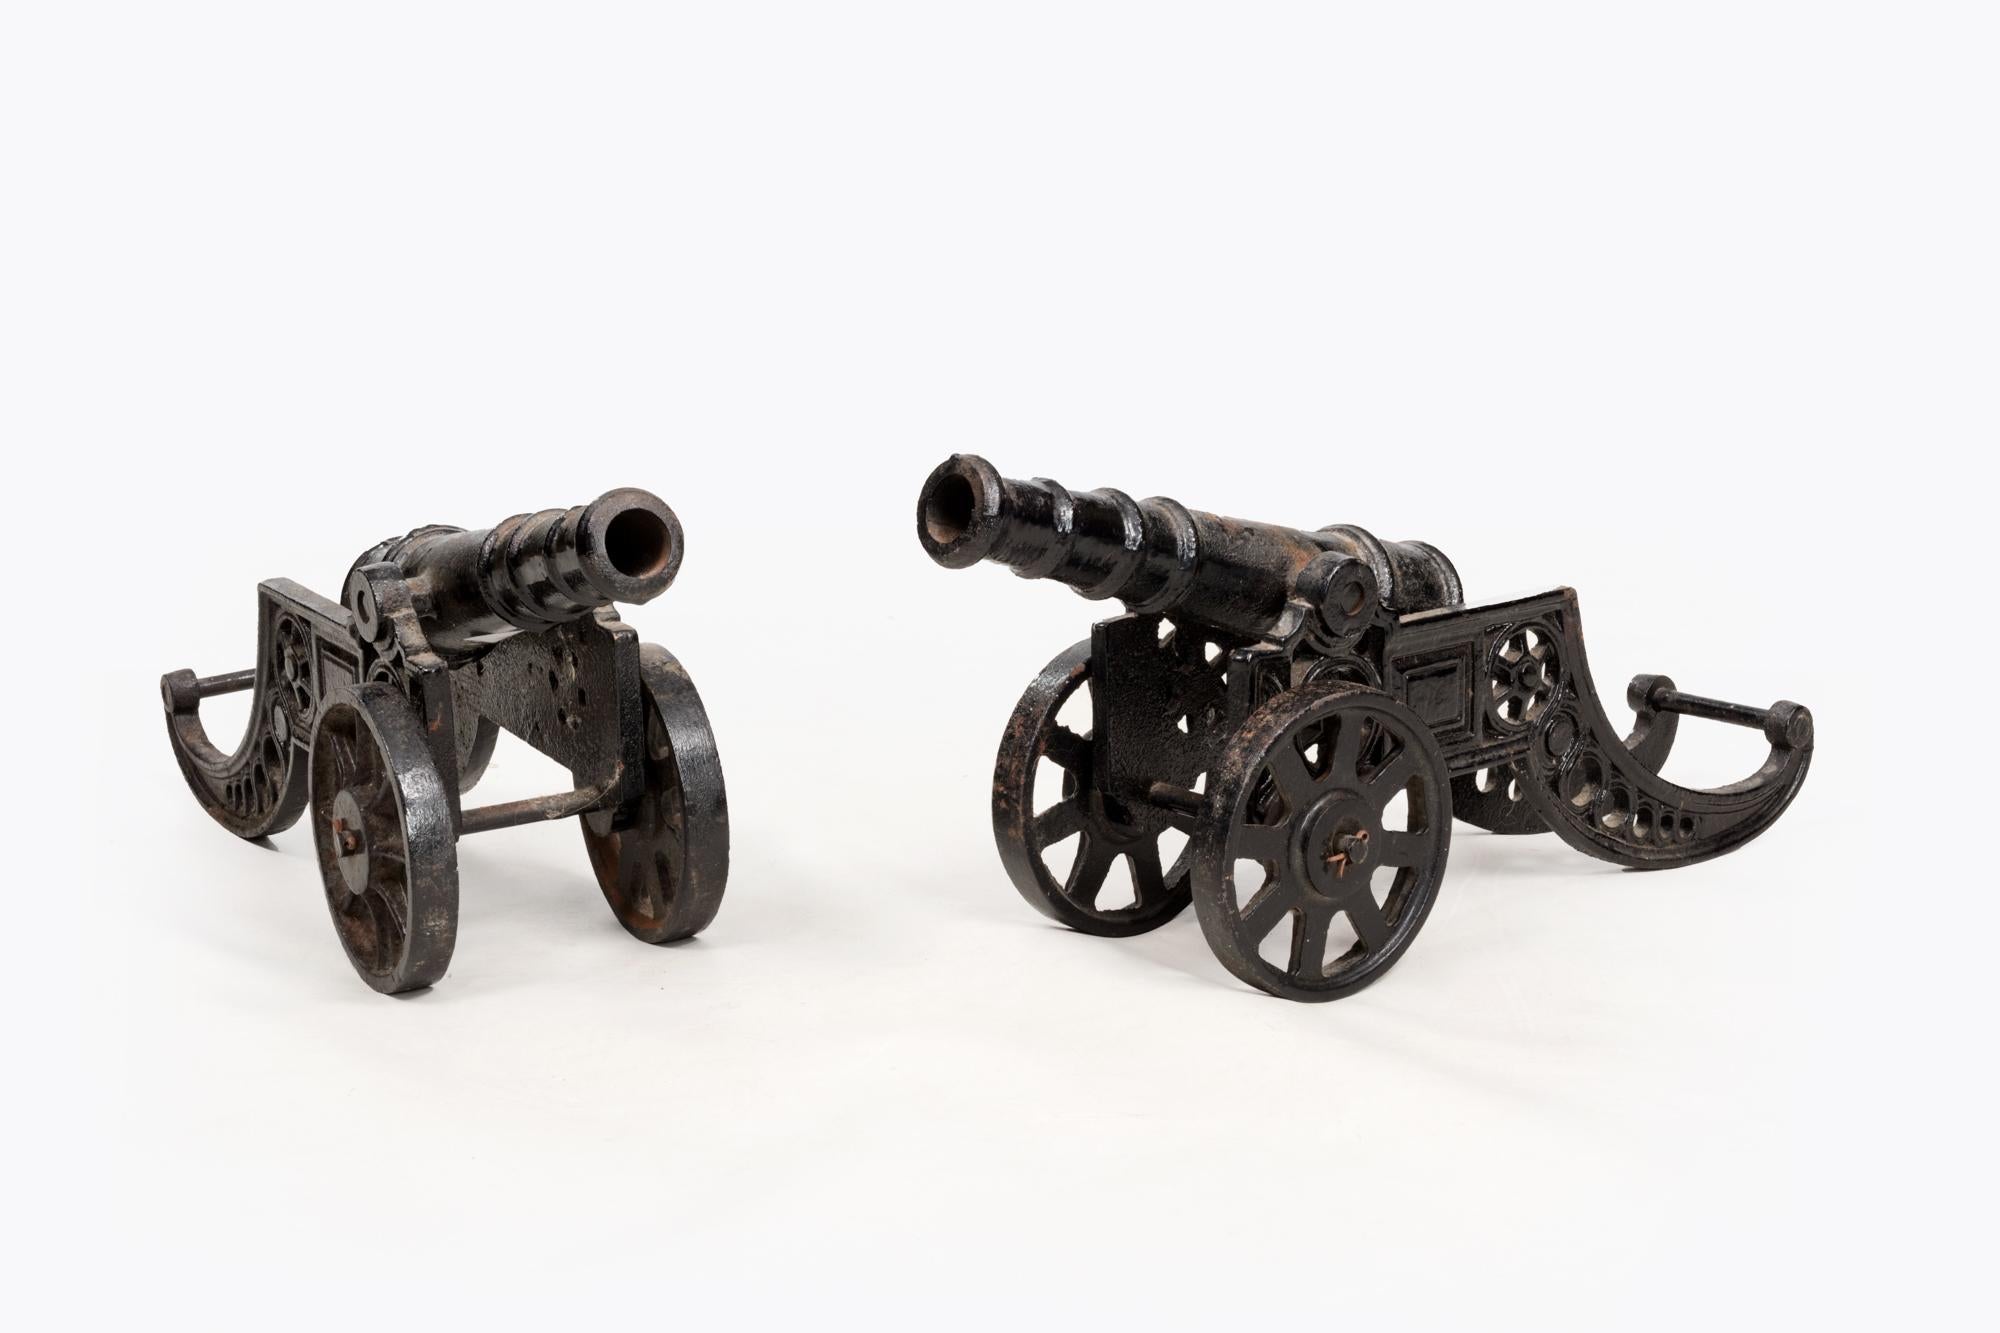 Paire de canons de signalisation décoratifs en fonte de bureau du 19e siècle, montés sur des chariots à roues fonctionnelles.